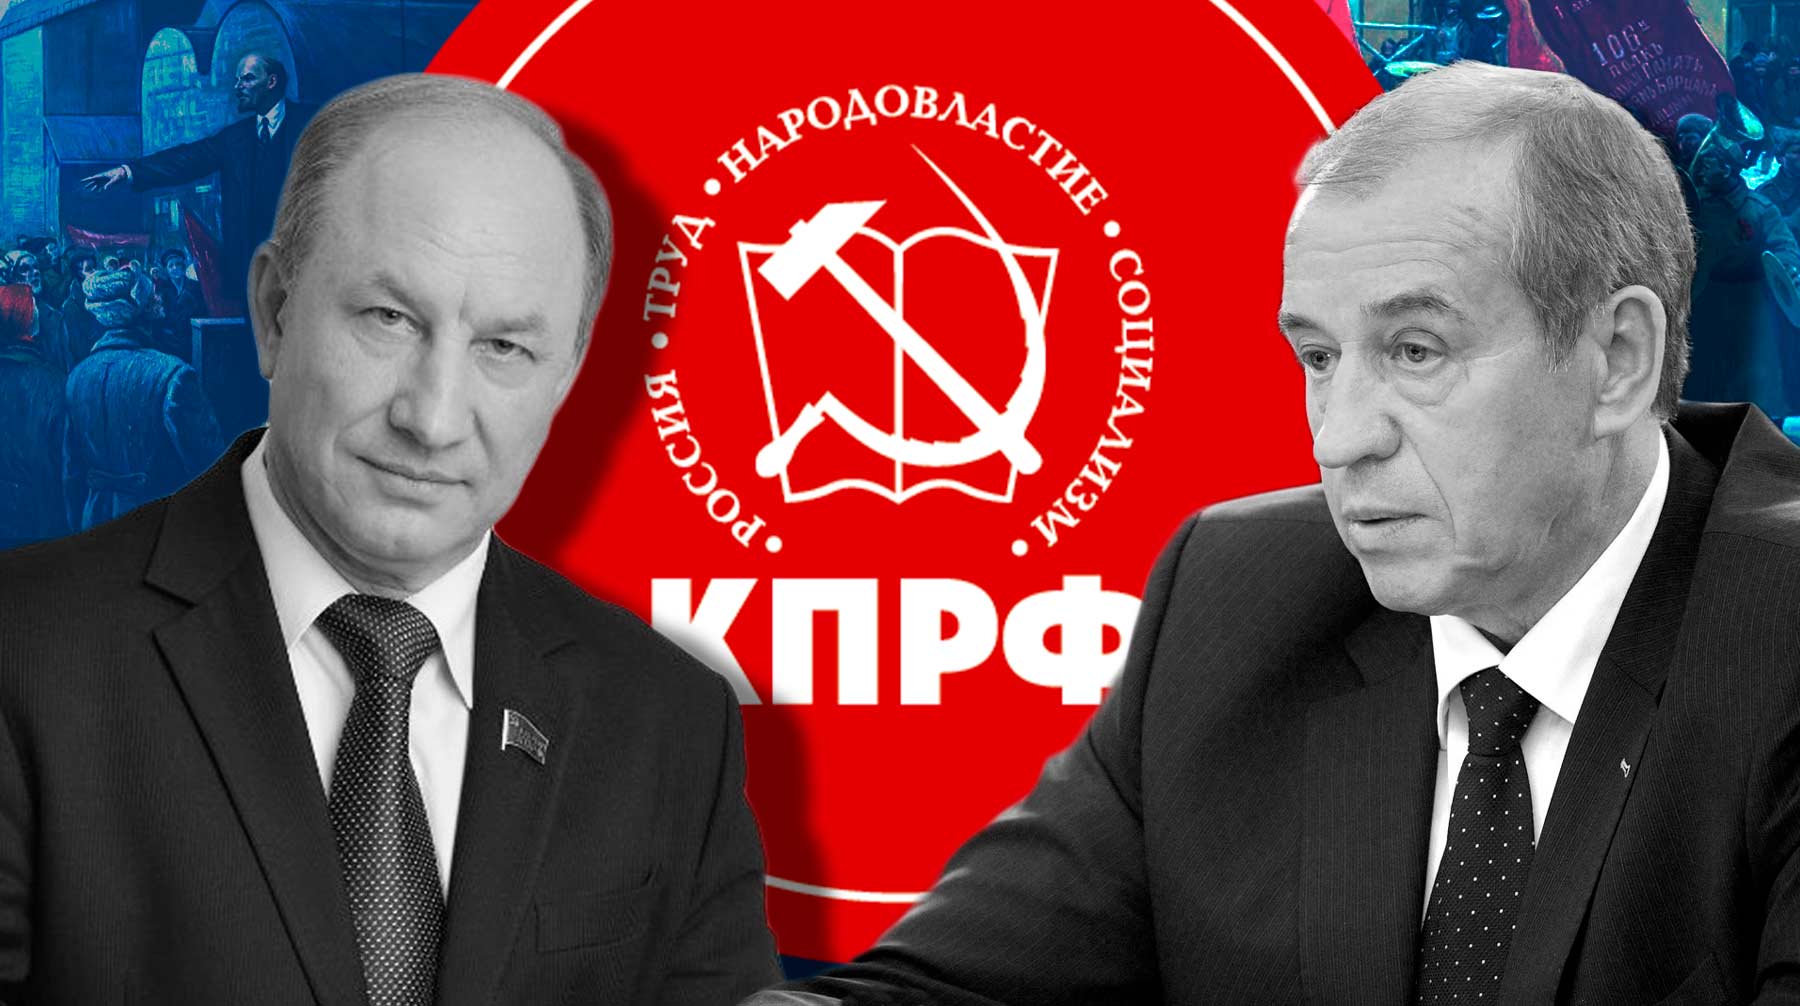 Ролик, в котором Сергей Левченко и Валерий Рашкин плетут «заговор против руководства», в партии назвали попыткой дискредитации undefined